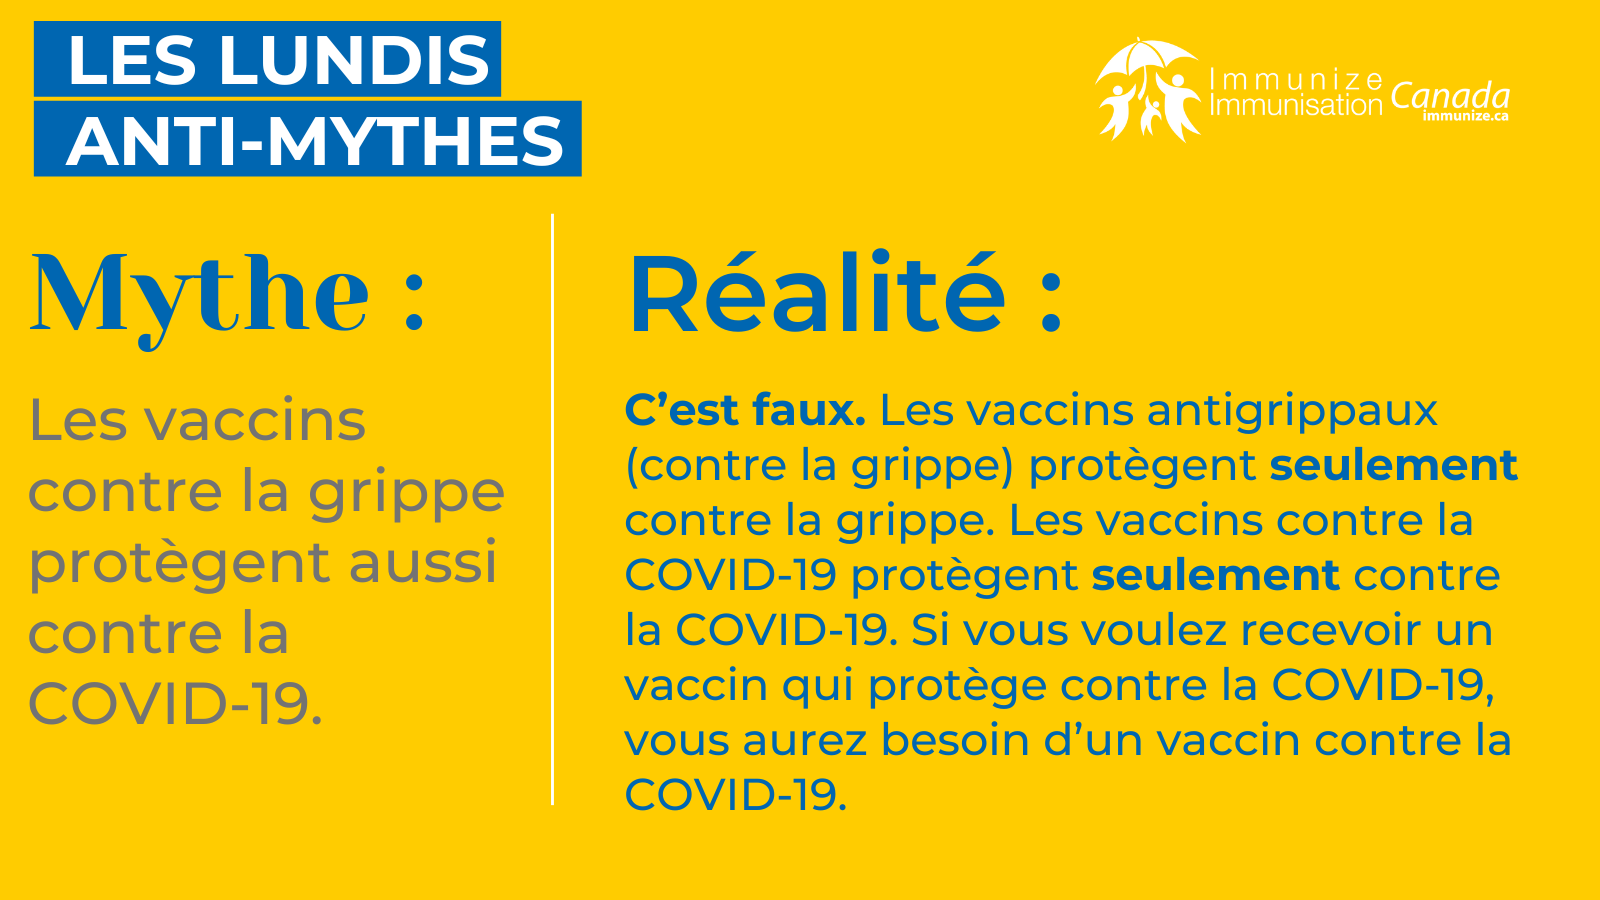 ​Les lundis anti-mythes - influenza et COVID-19 - image 1 pour Twitter/X